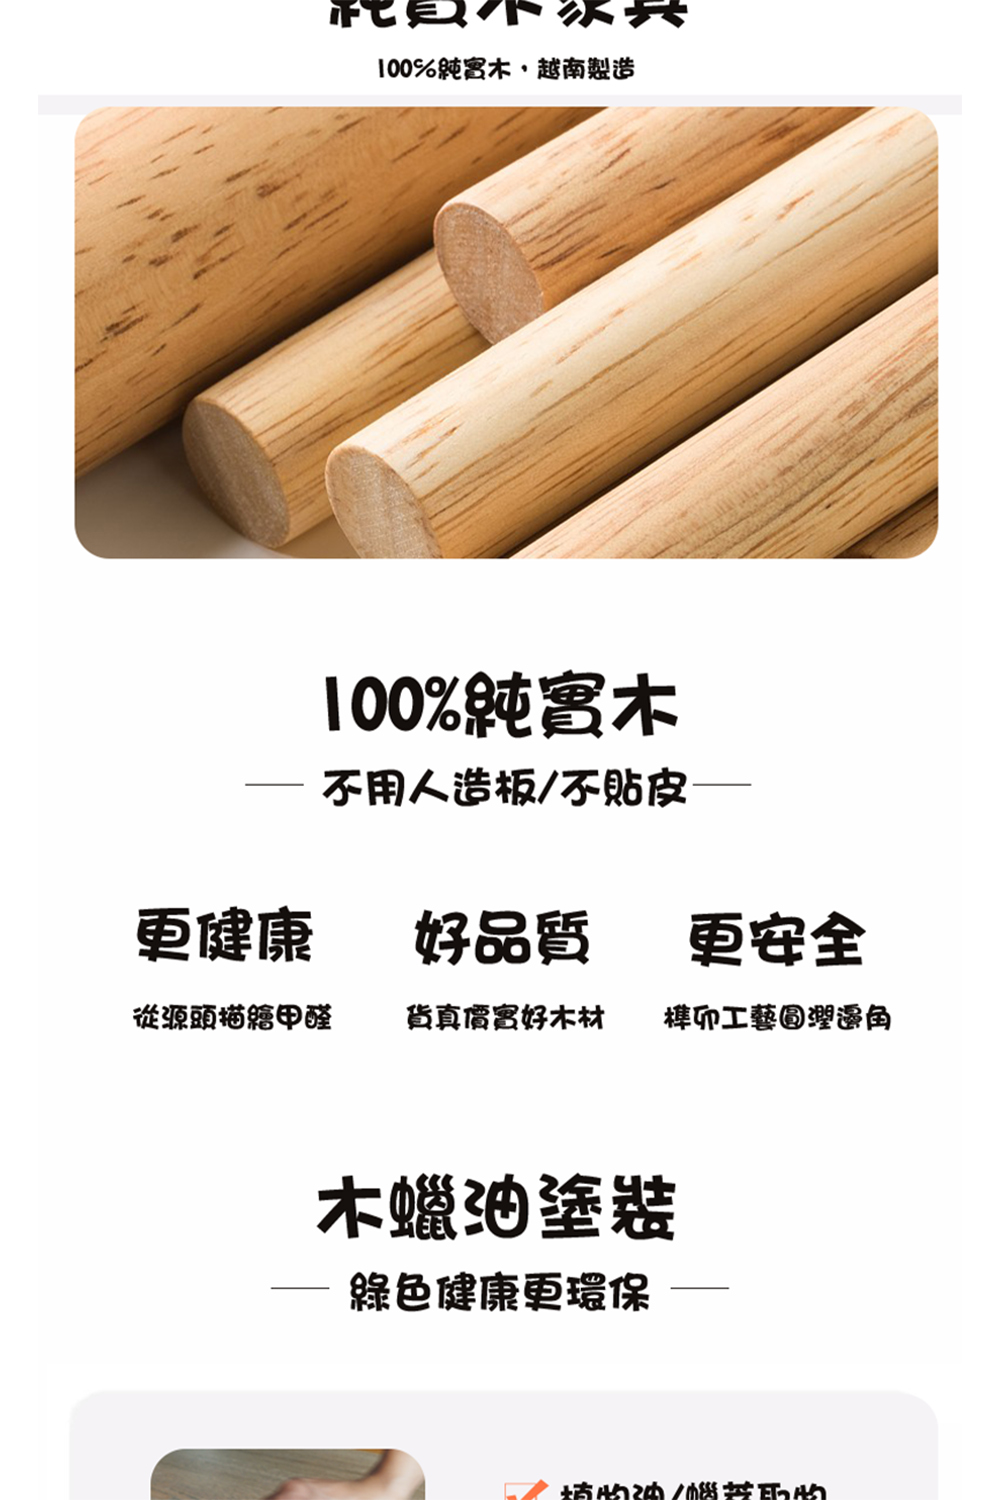 100%純實木,越南製造